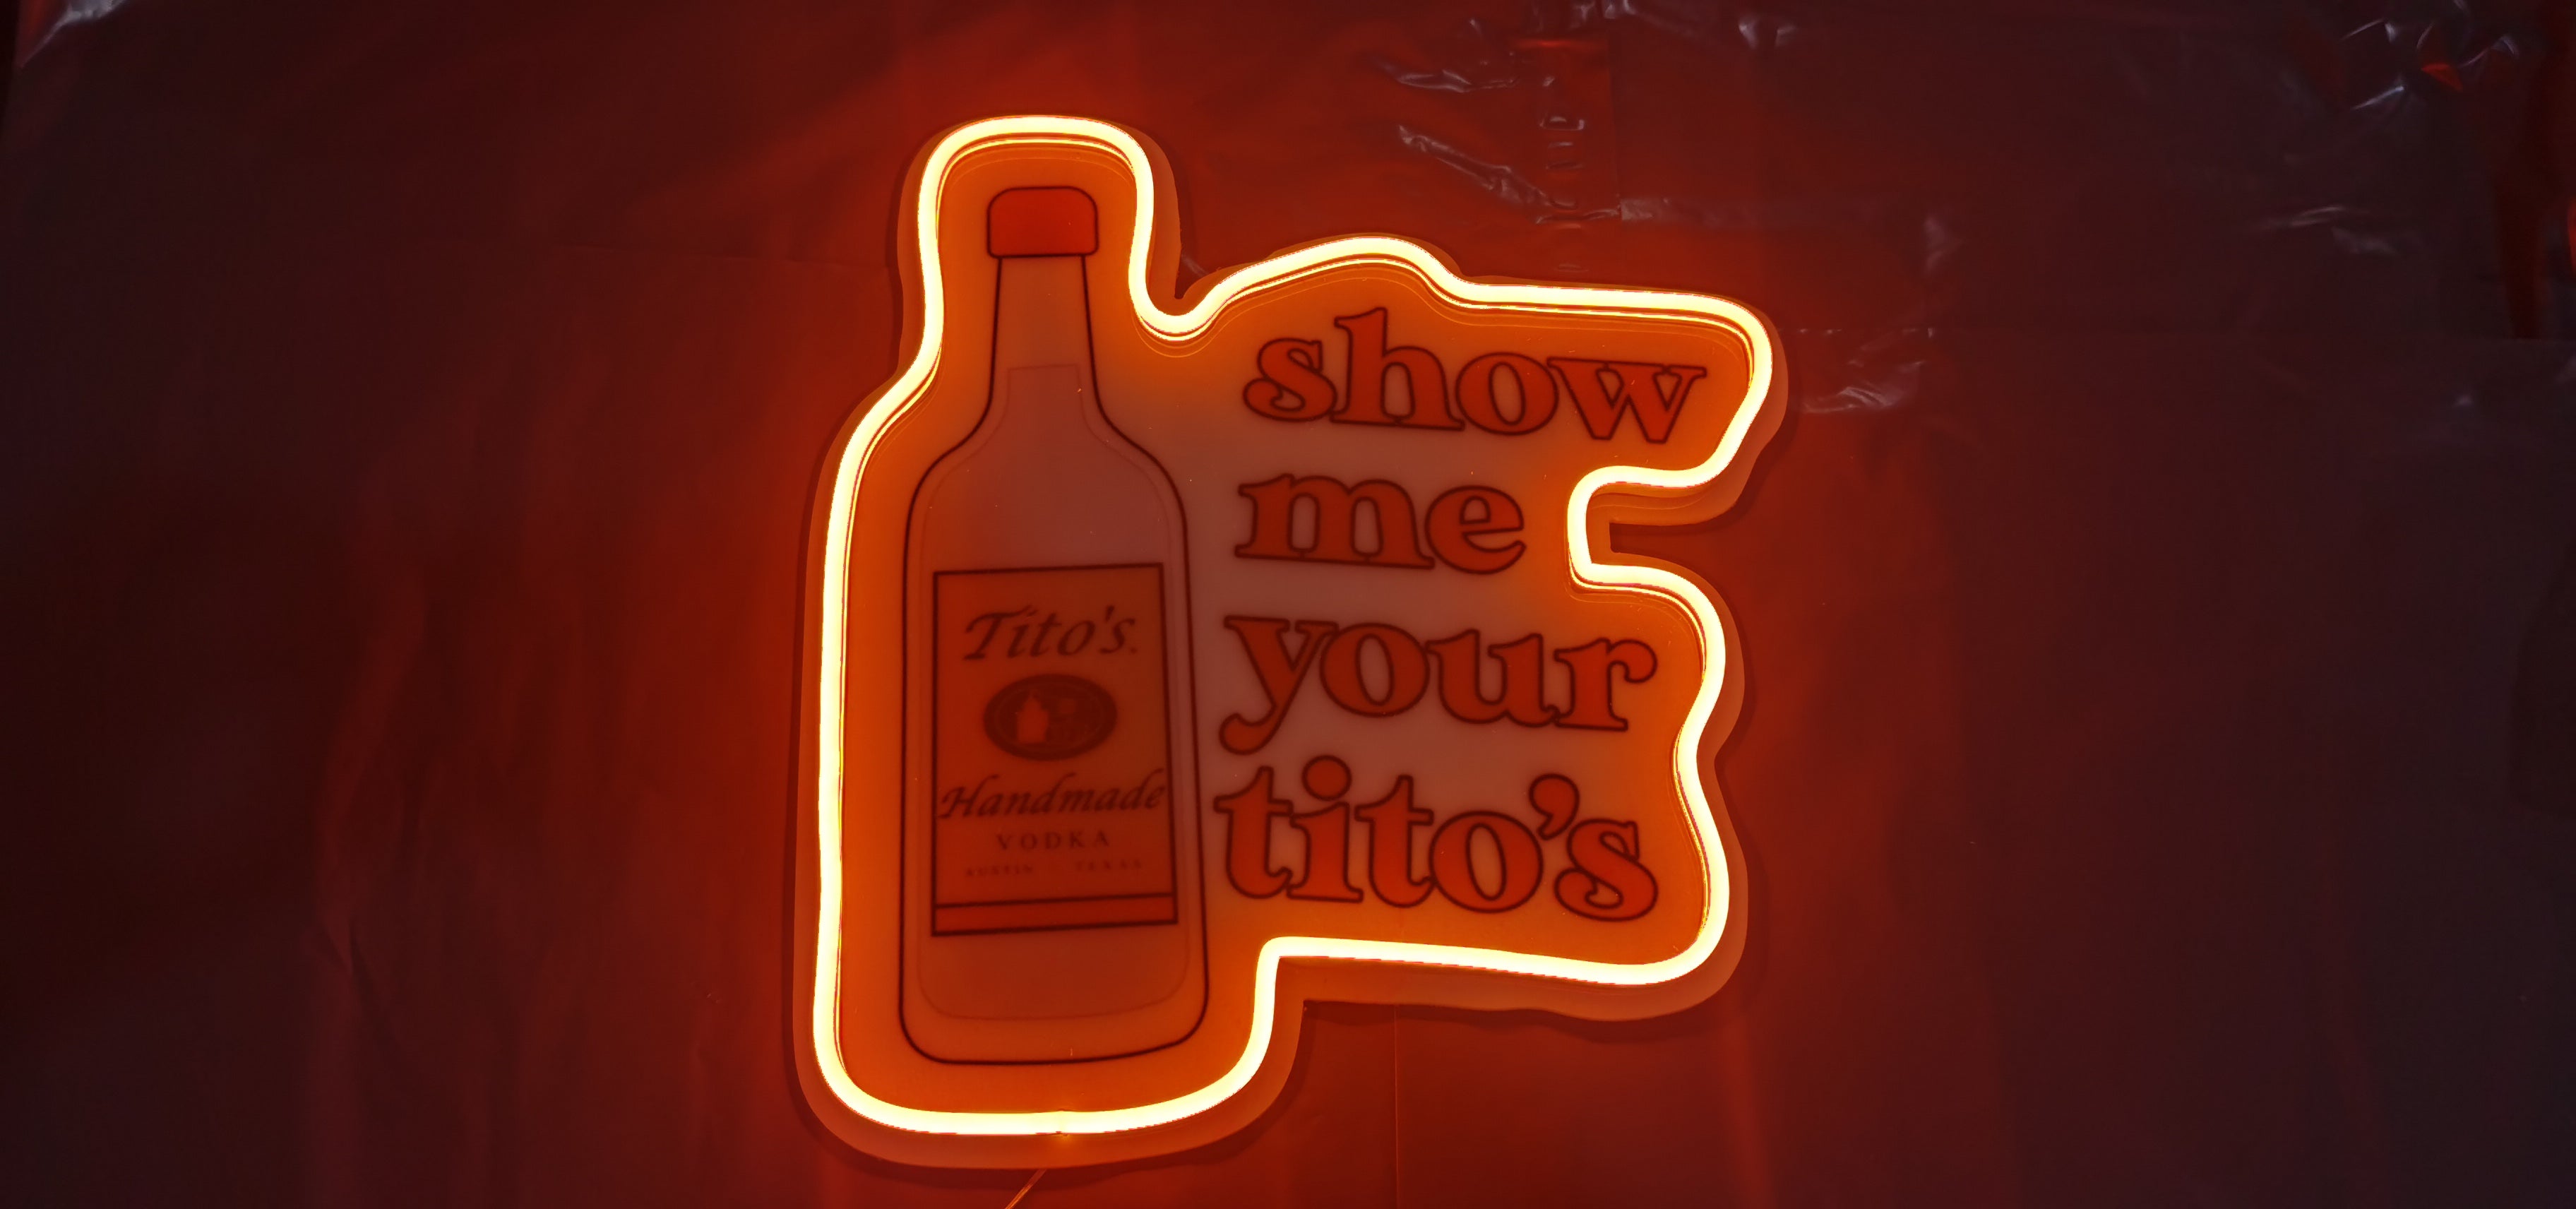 Tito's vodka signs